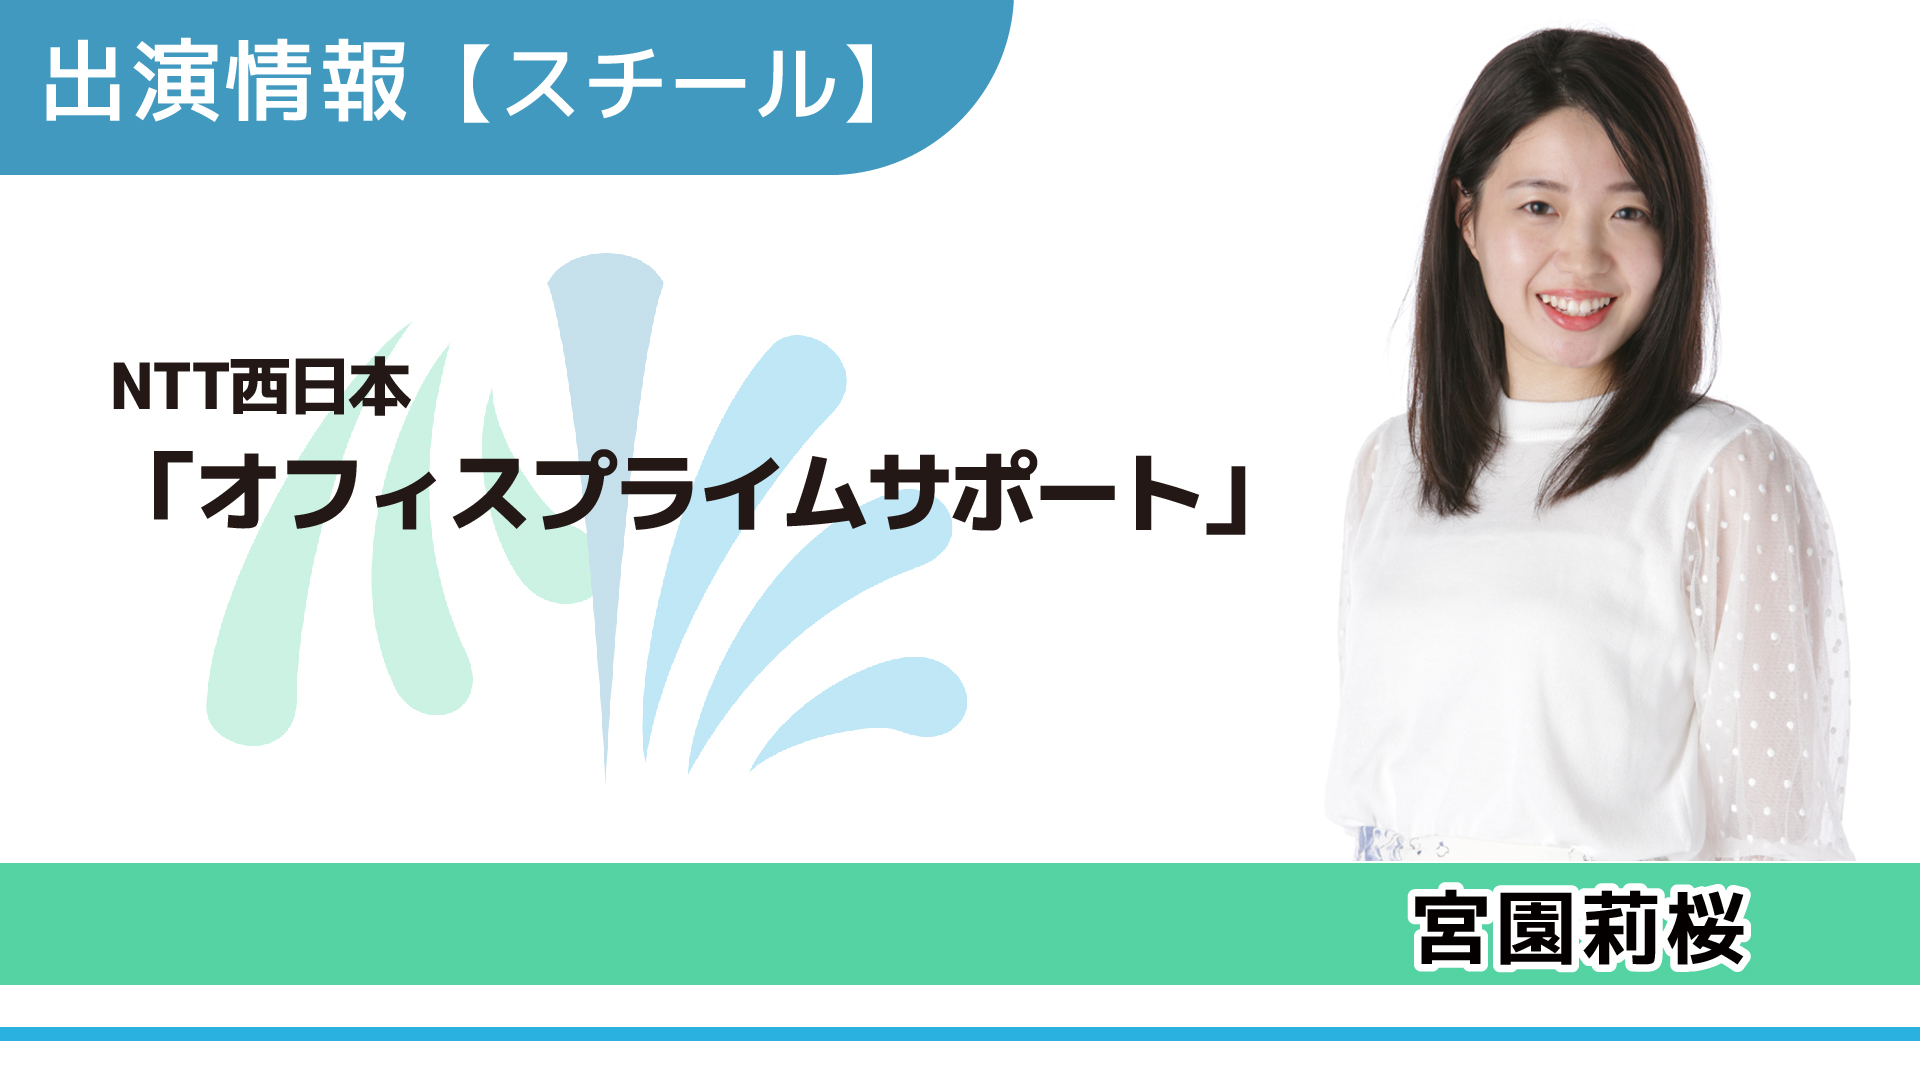 【出演情報】宮園莉桜 / NTT西日本「オフィスプライムサポート」スチールモデル